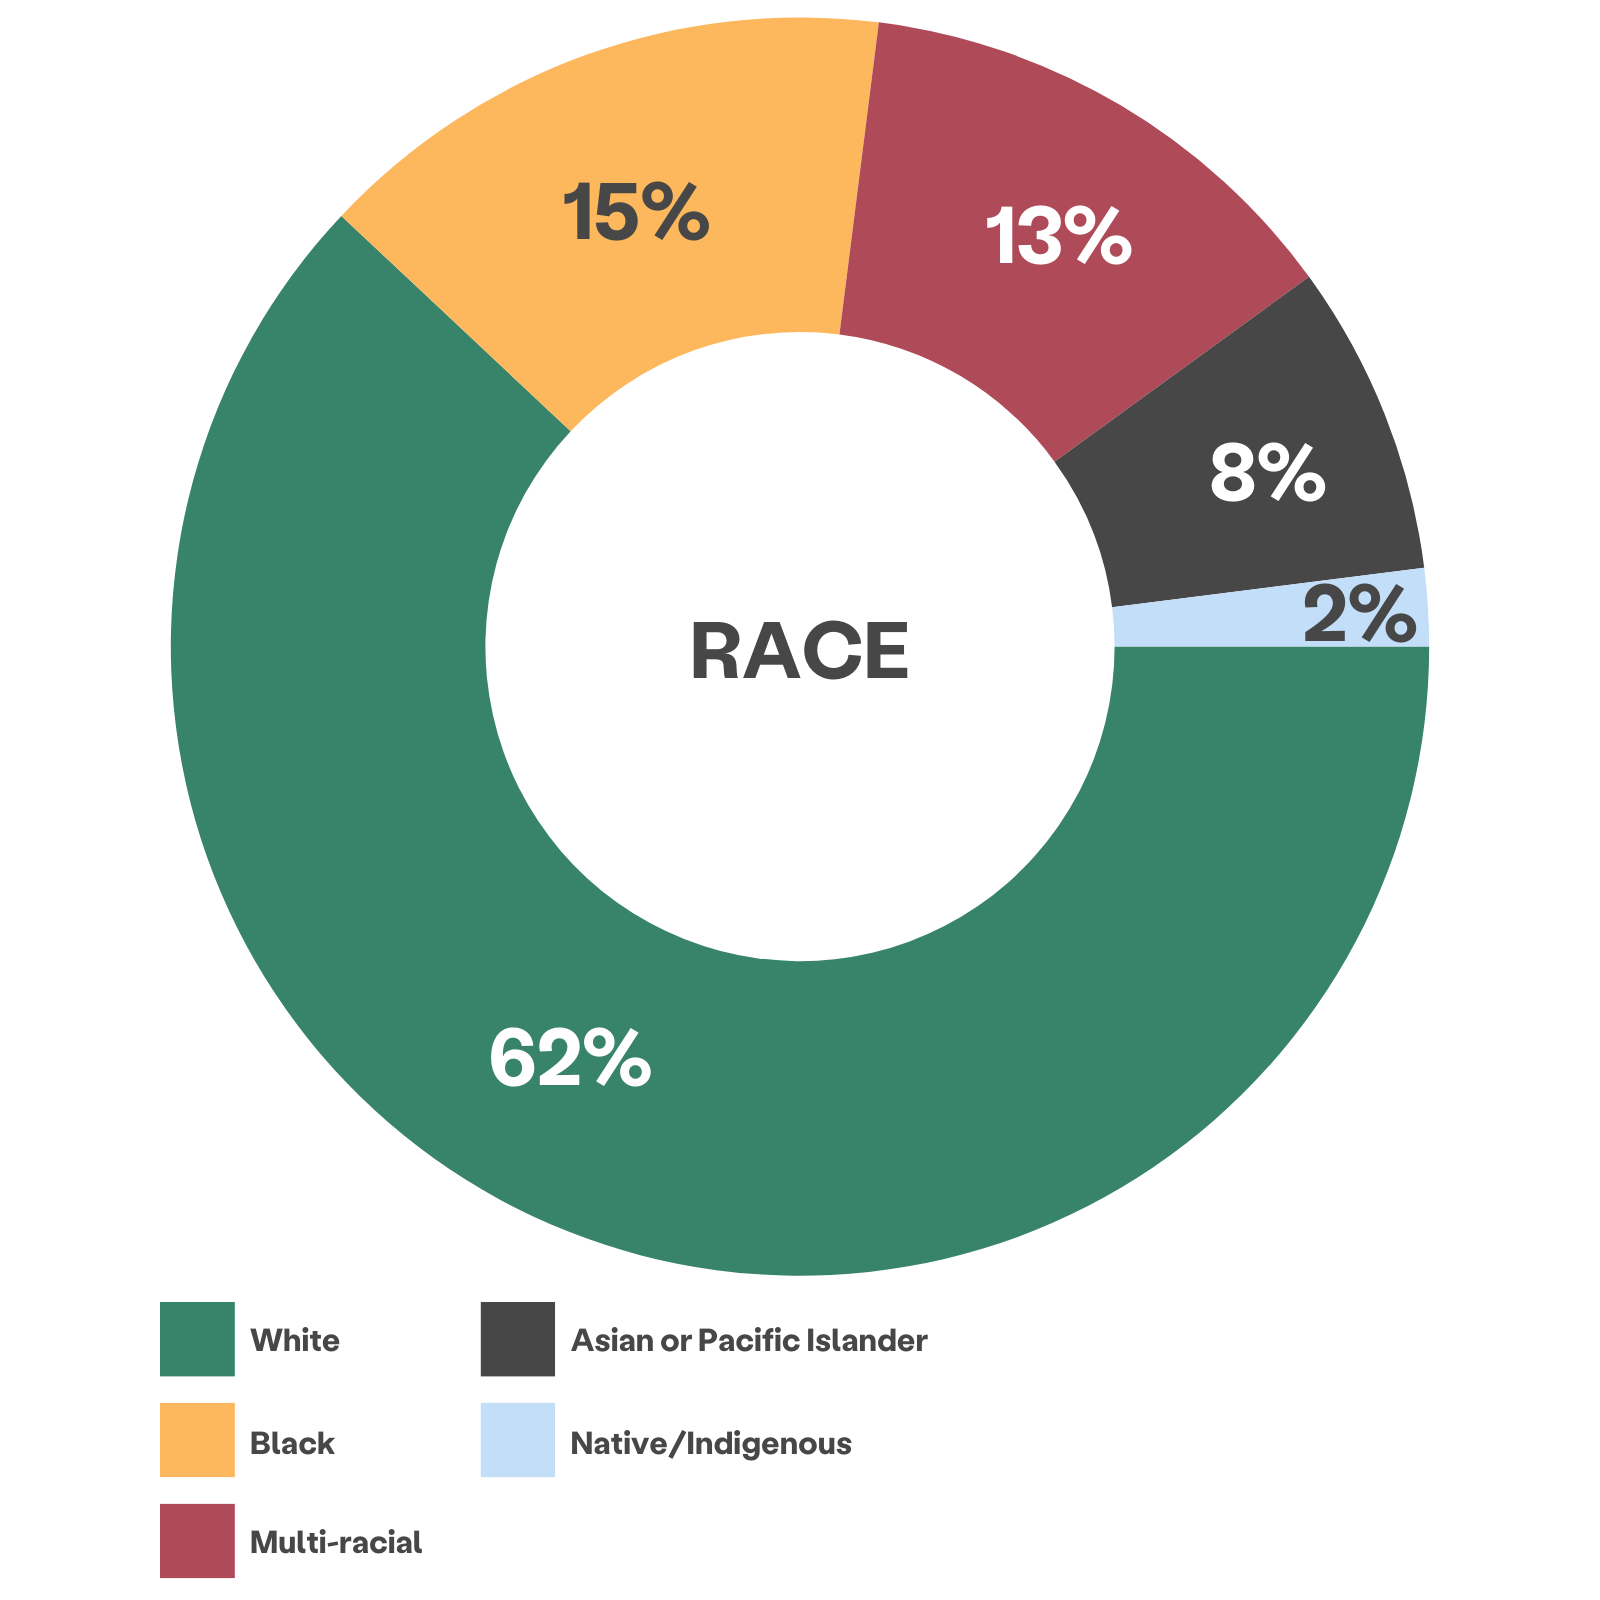 grafico a ruote multicolore che mostra la razza del cliente: 62% bianco, 15% nero, 13% multirazziale, 8% asiatico o isolano del Pacifico, 2% nativo/indigeno